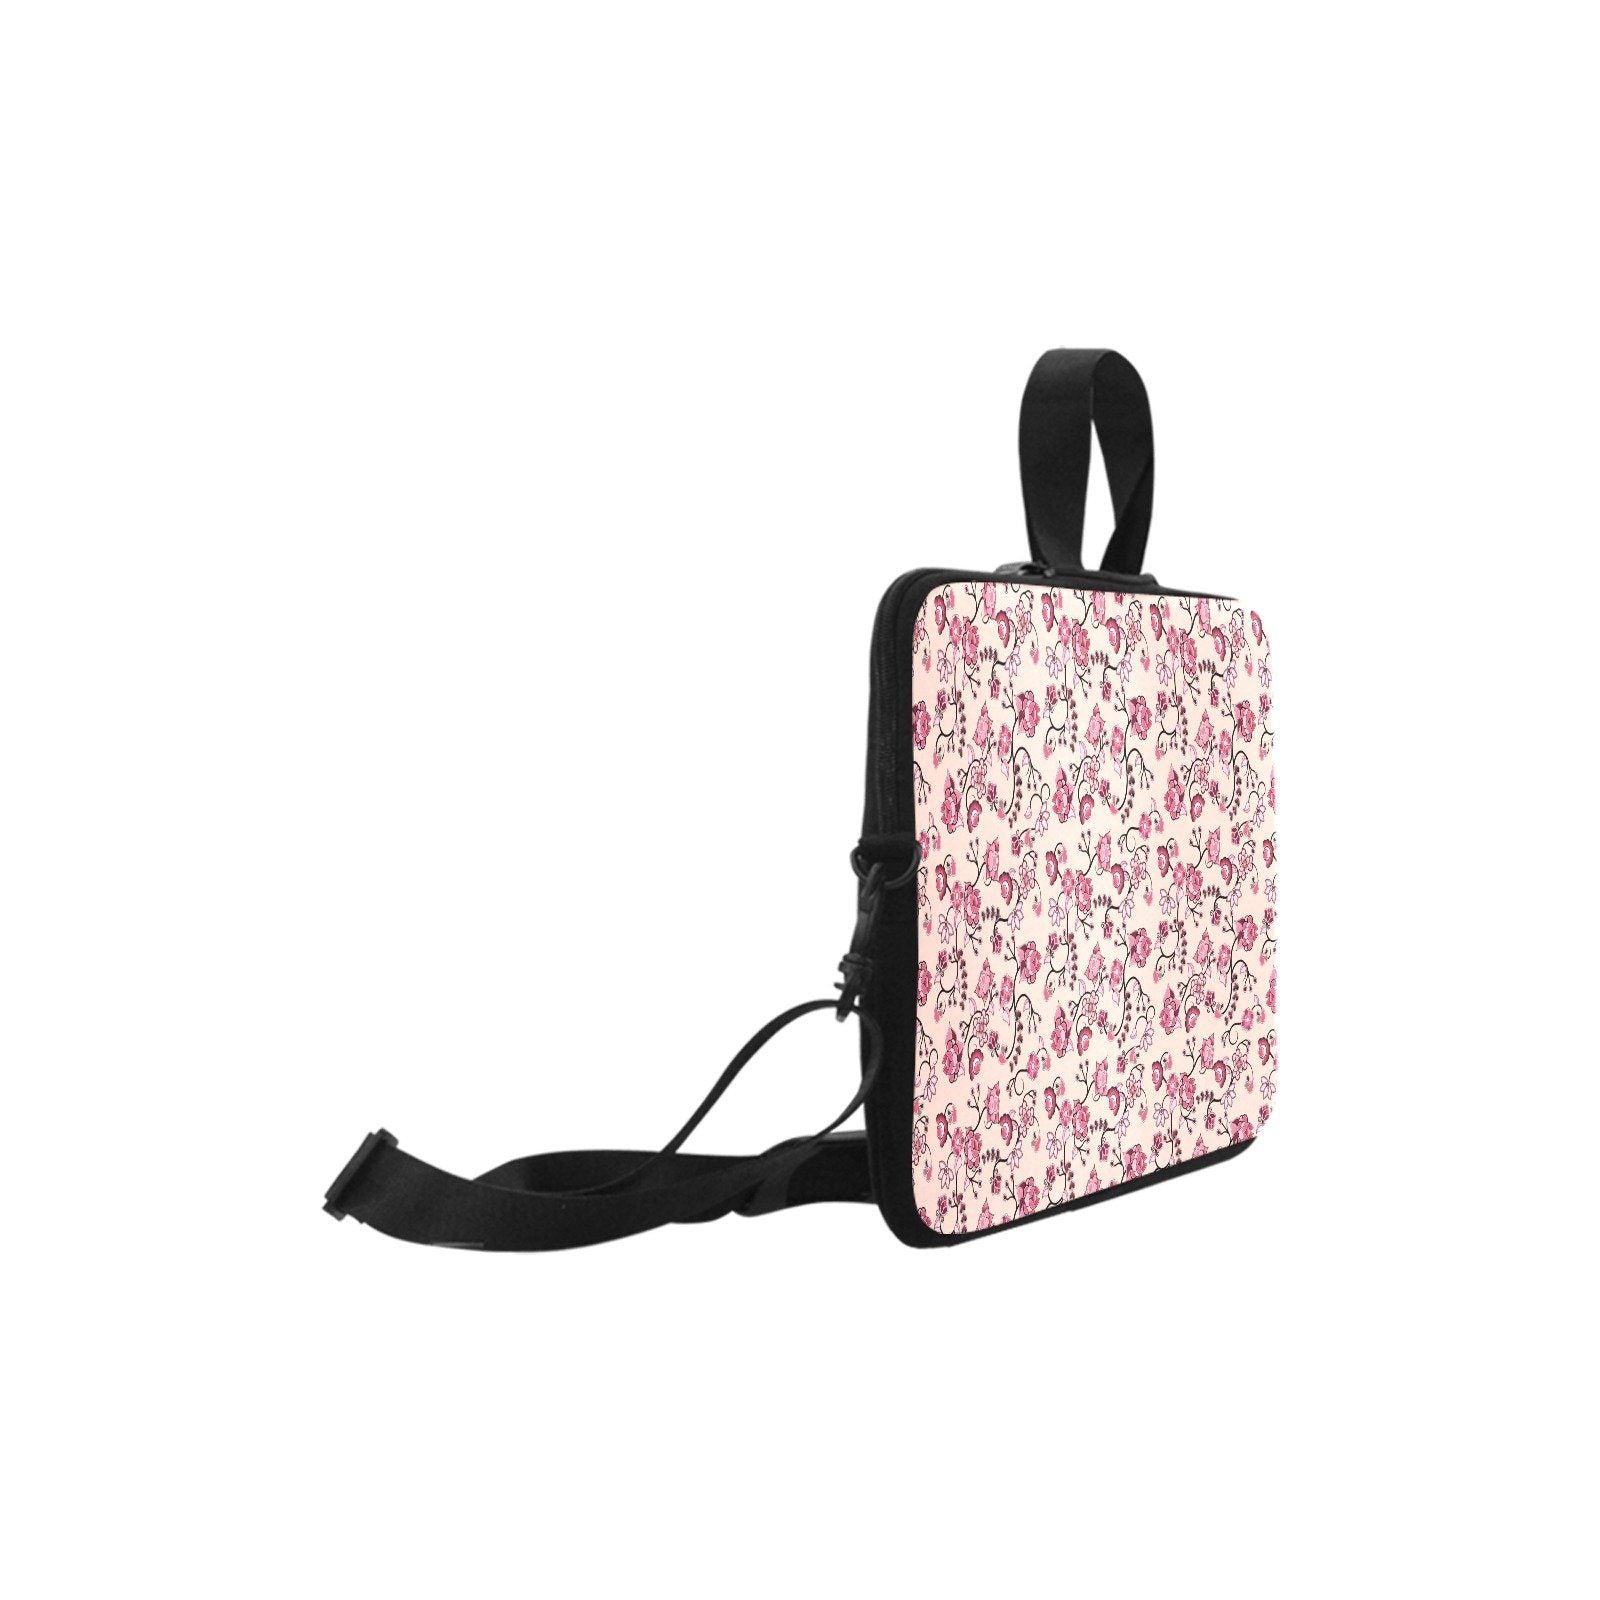 Floral Amour Laptop Handbags 17" bag e-joyer 